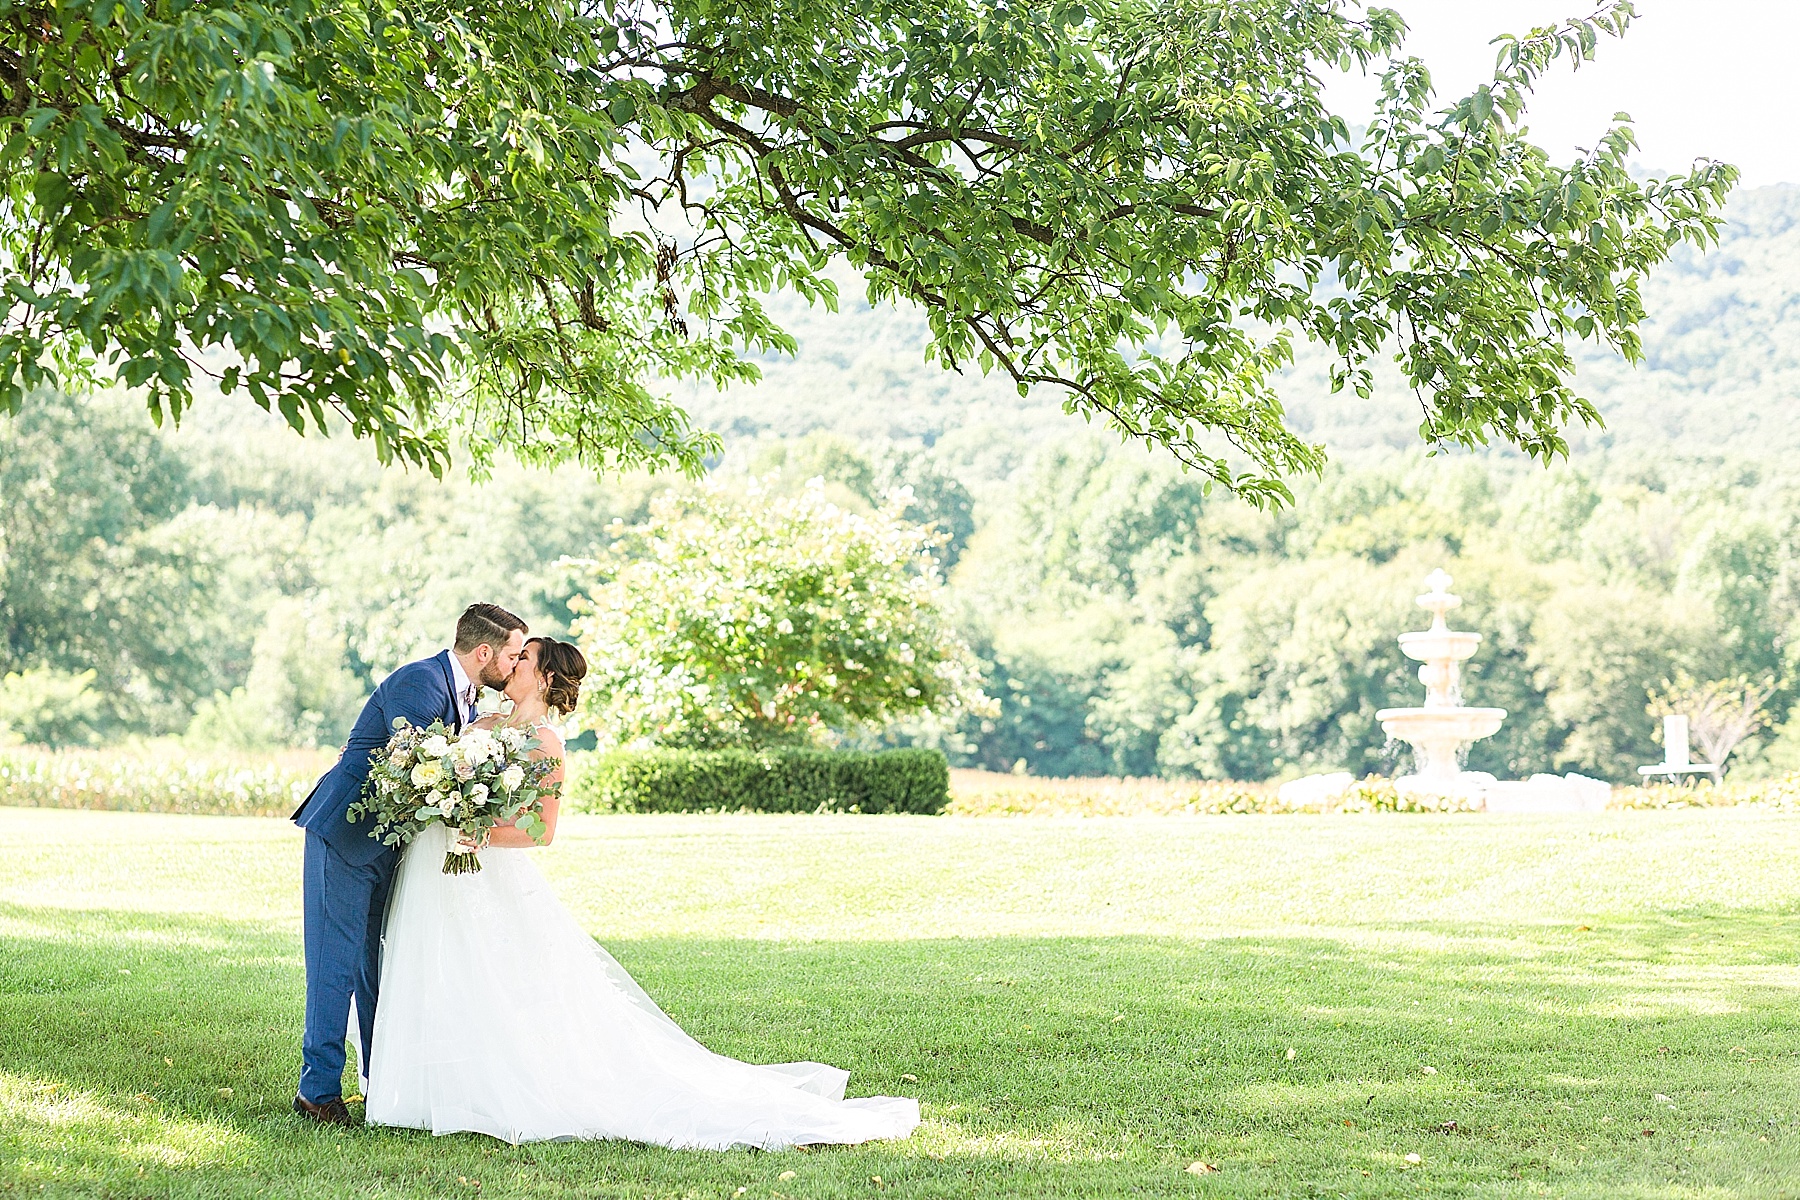 Alexandra Mandato Photography photographs Maryland wedding day